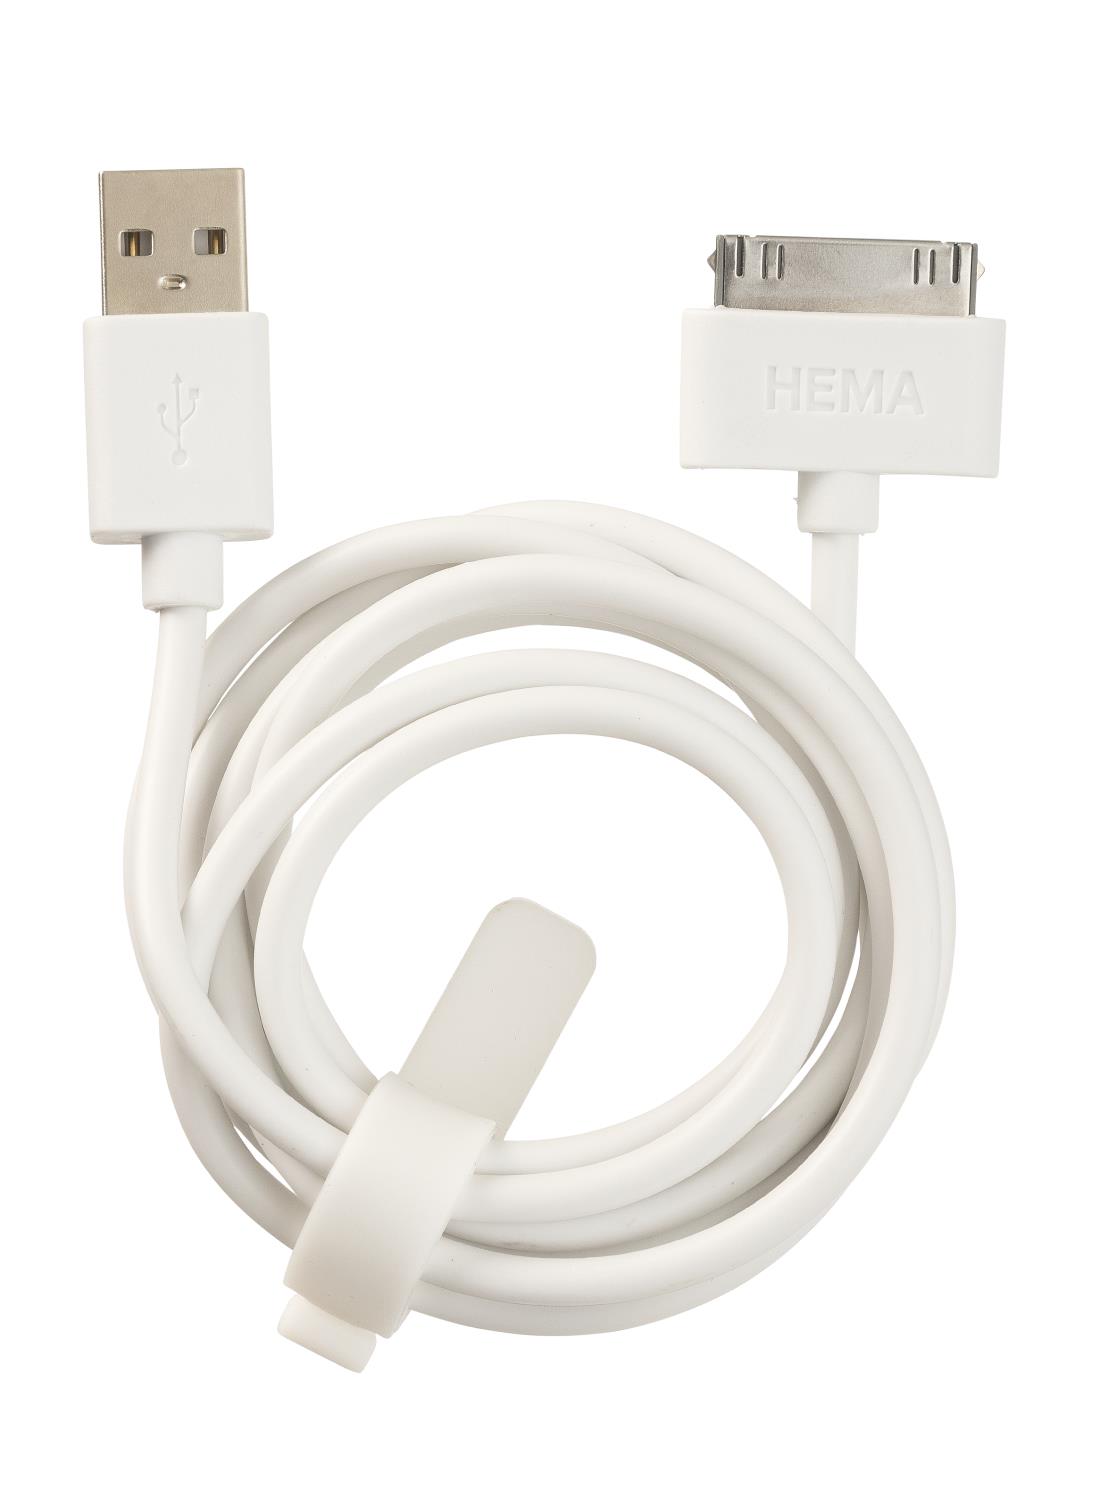 USB laadkabel 30-pin - HEMA